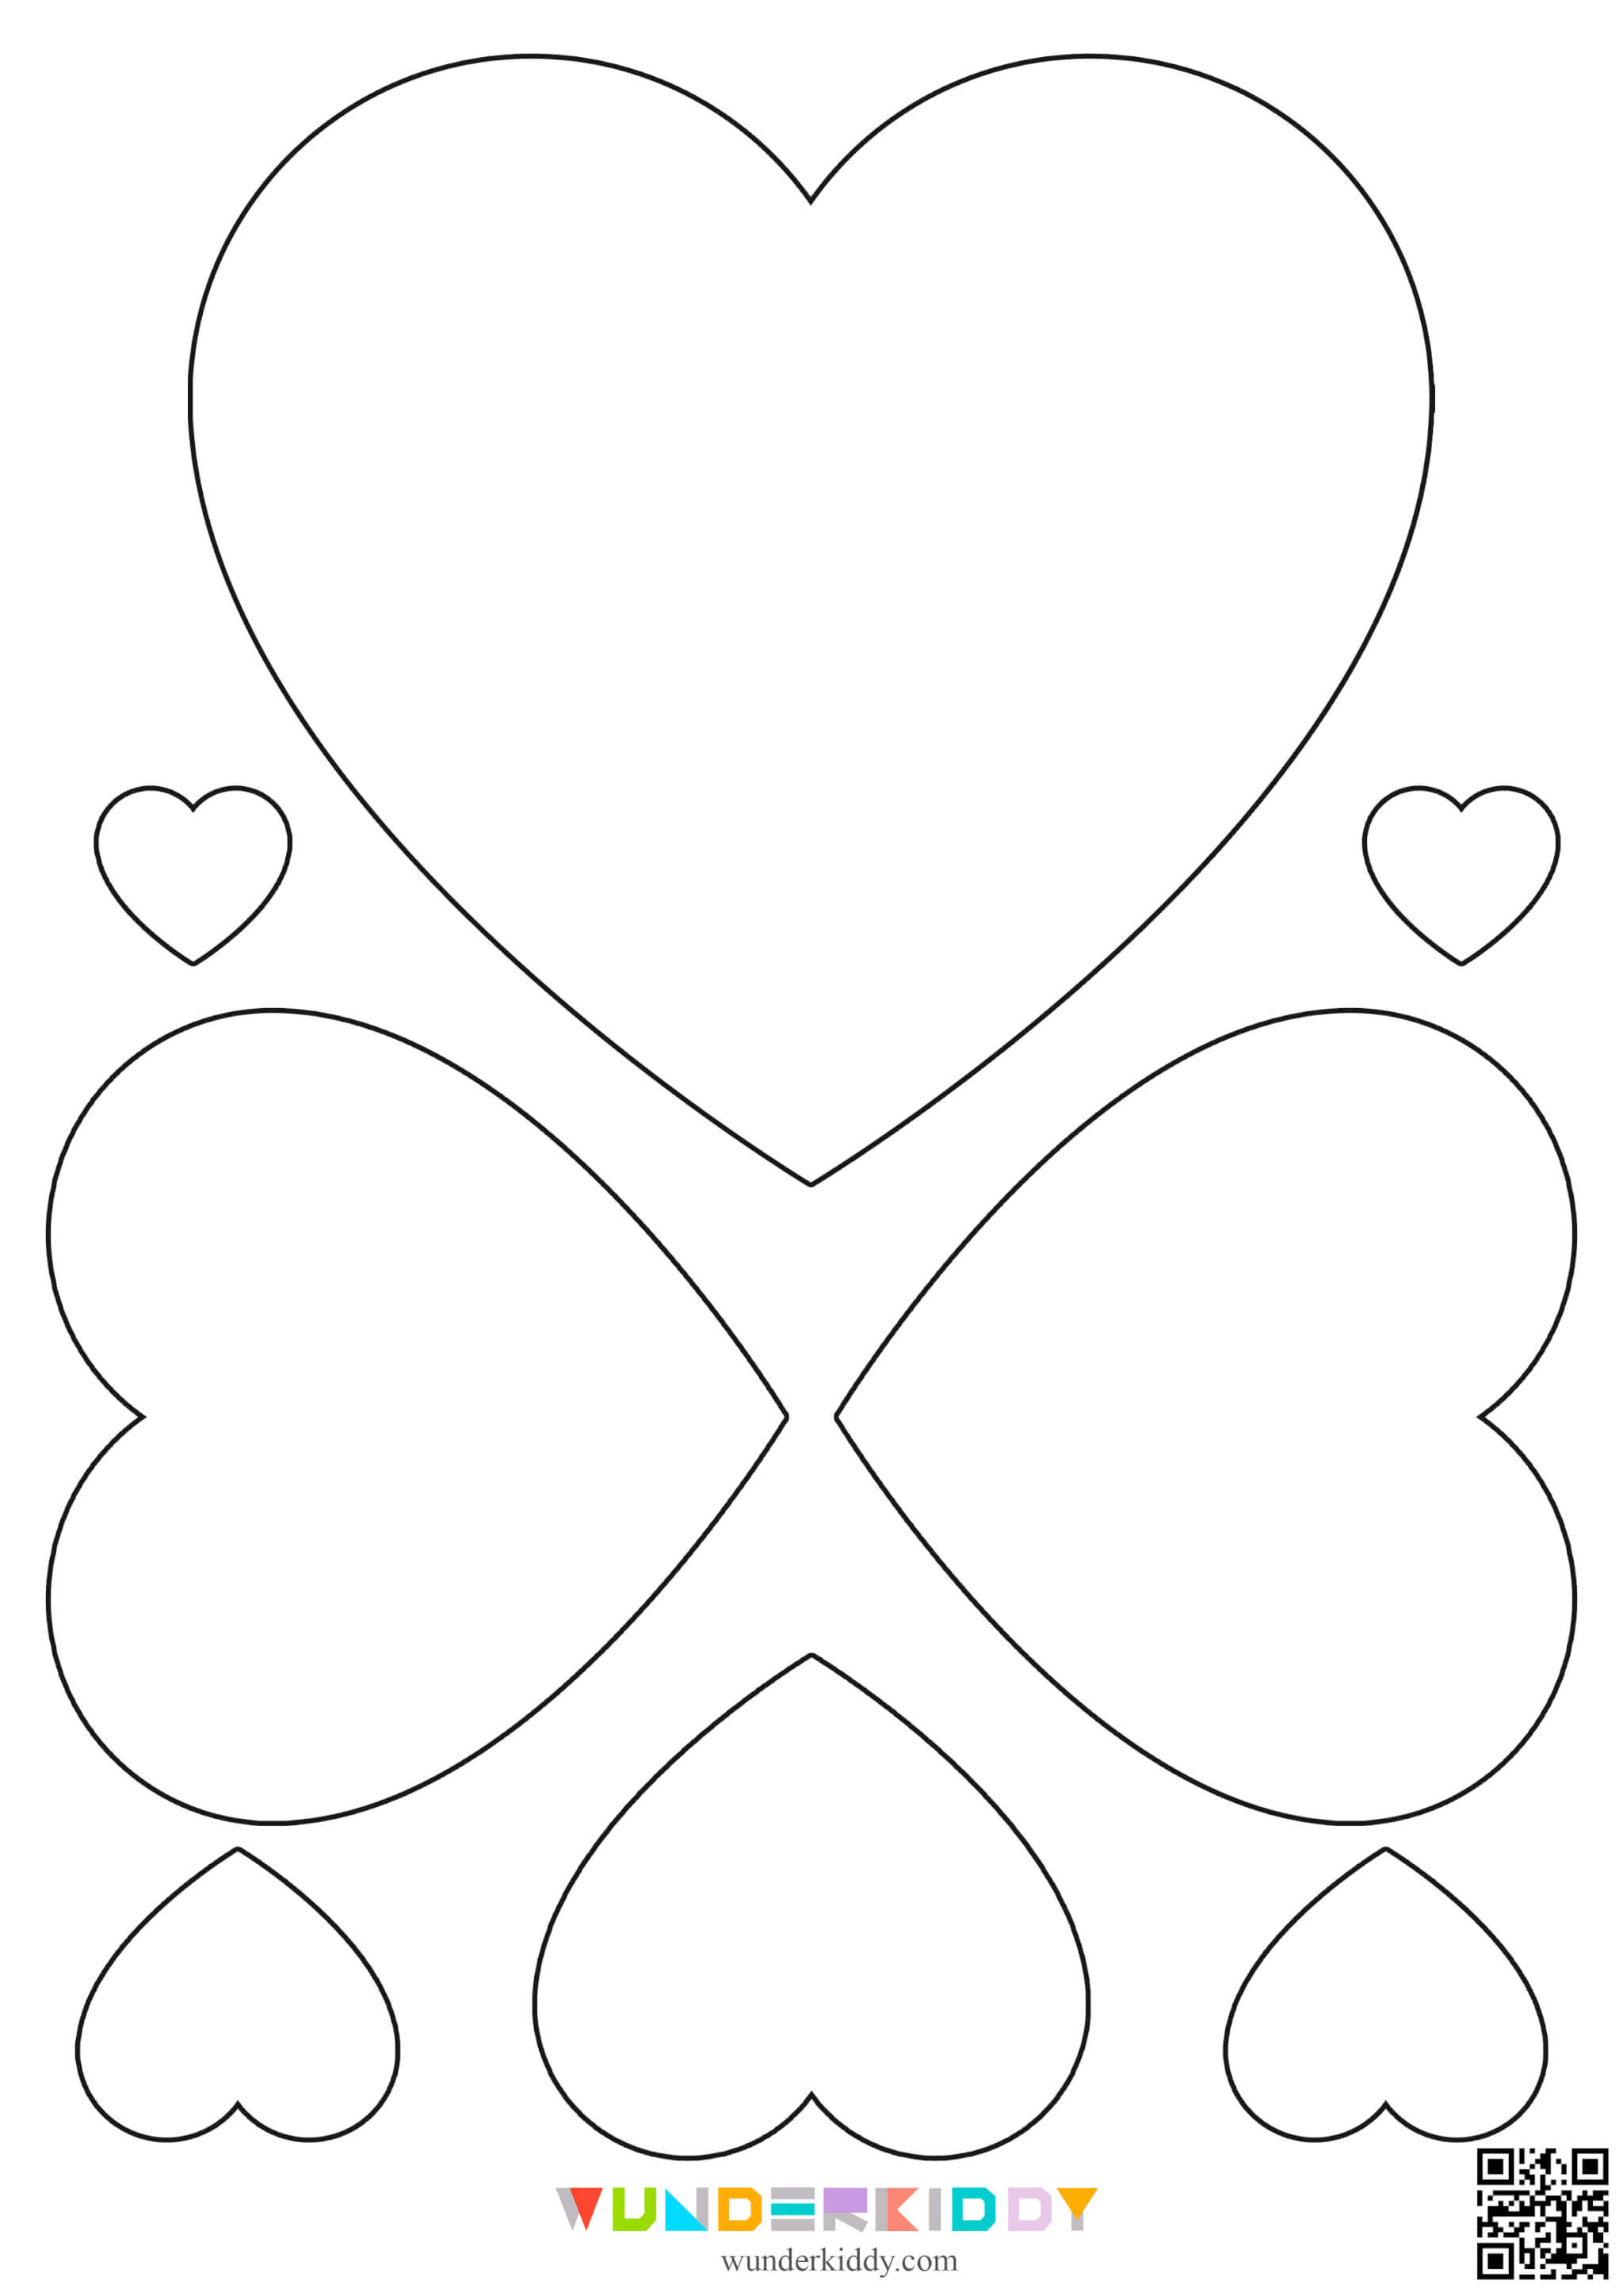 Контуры и шаблоны «Сердечки» для вырезания - Изображение 10